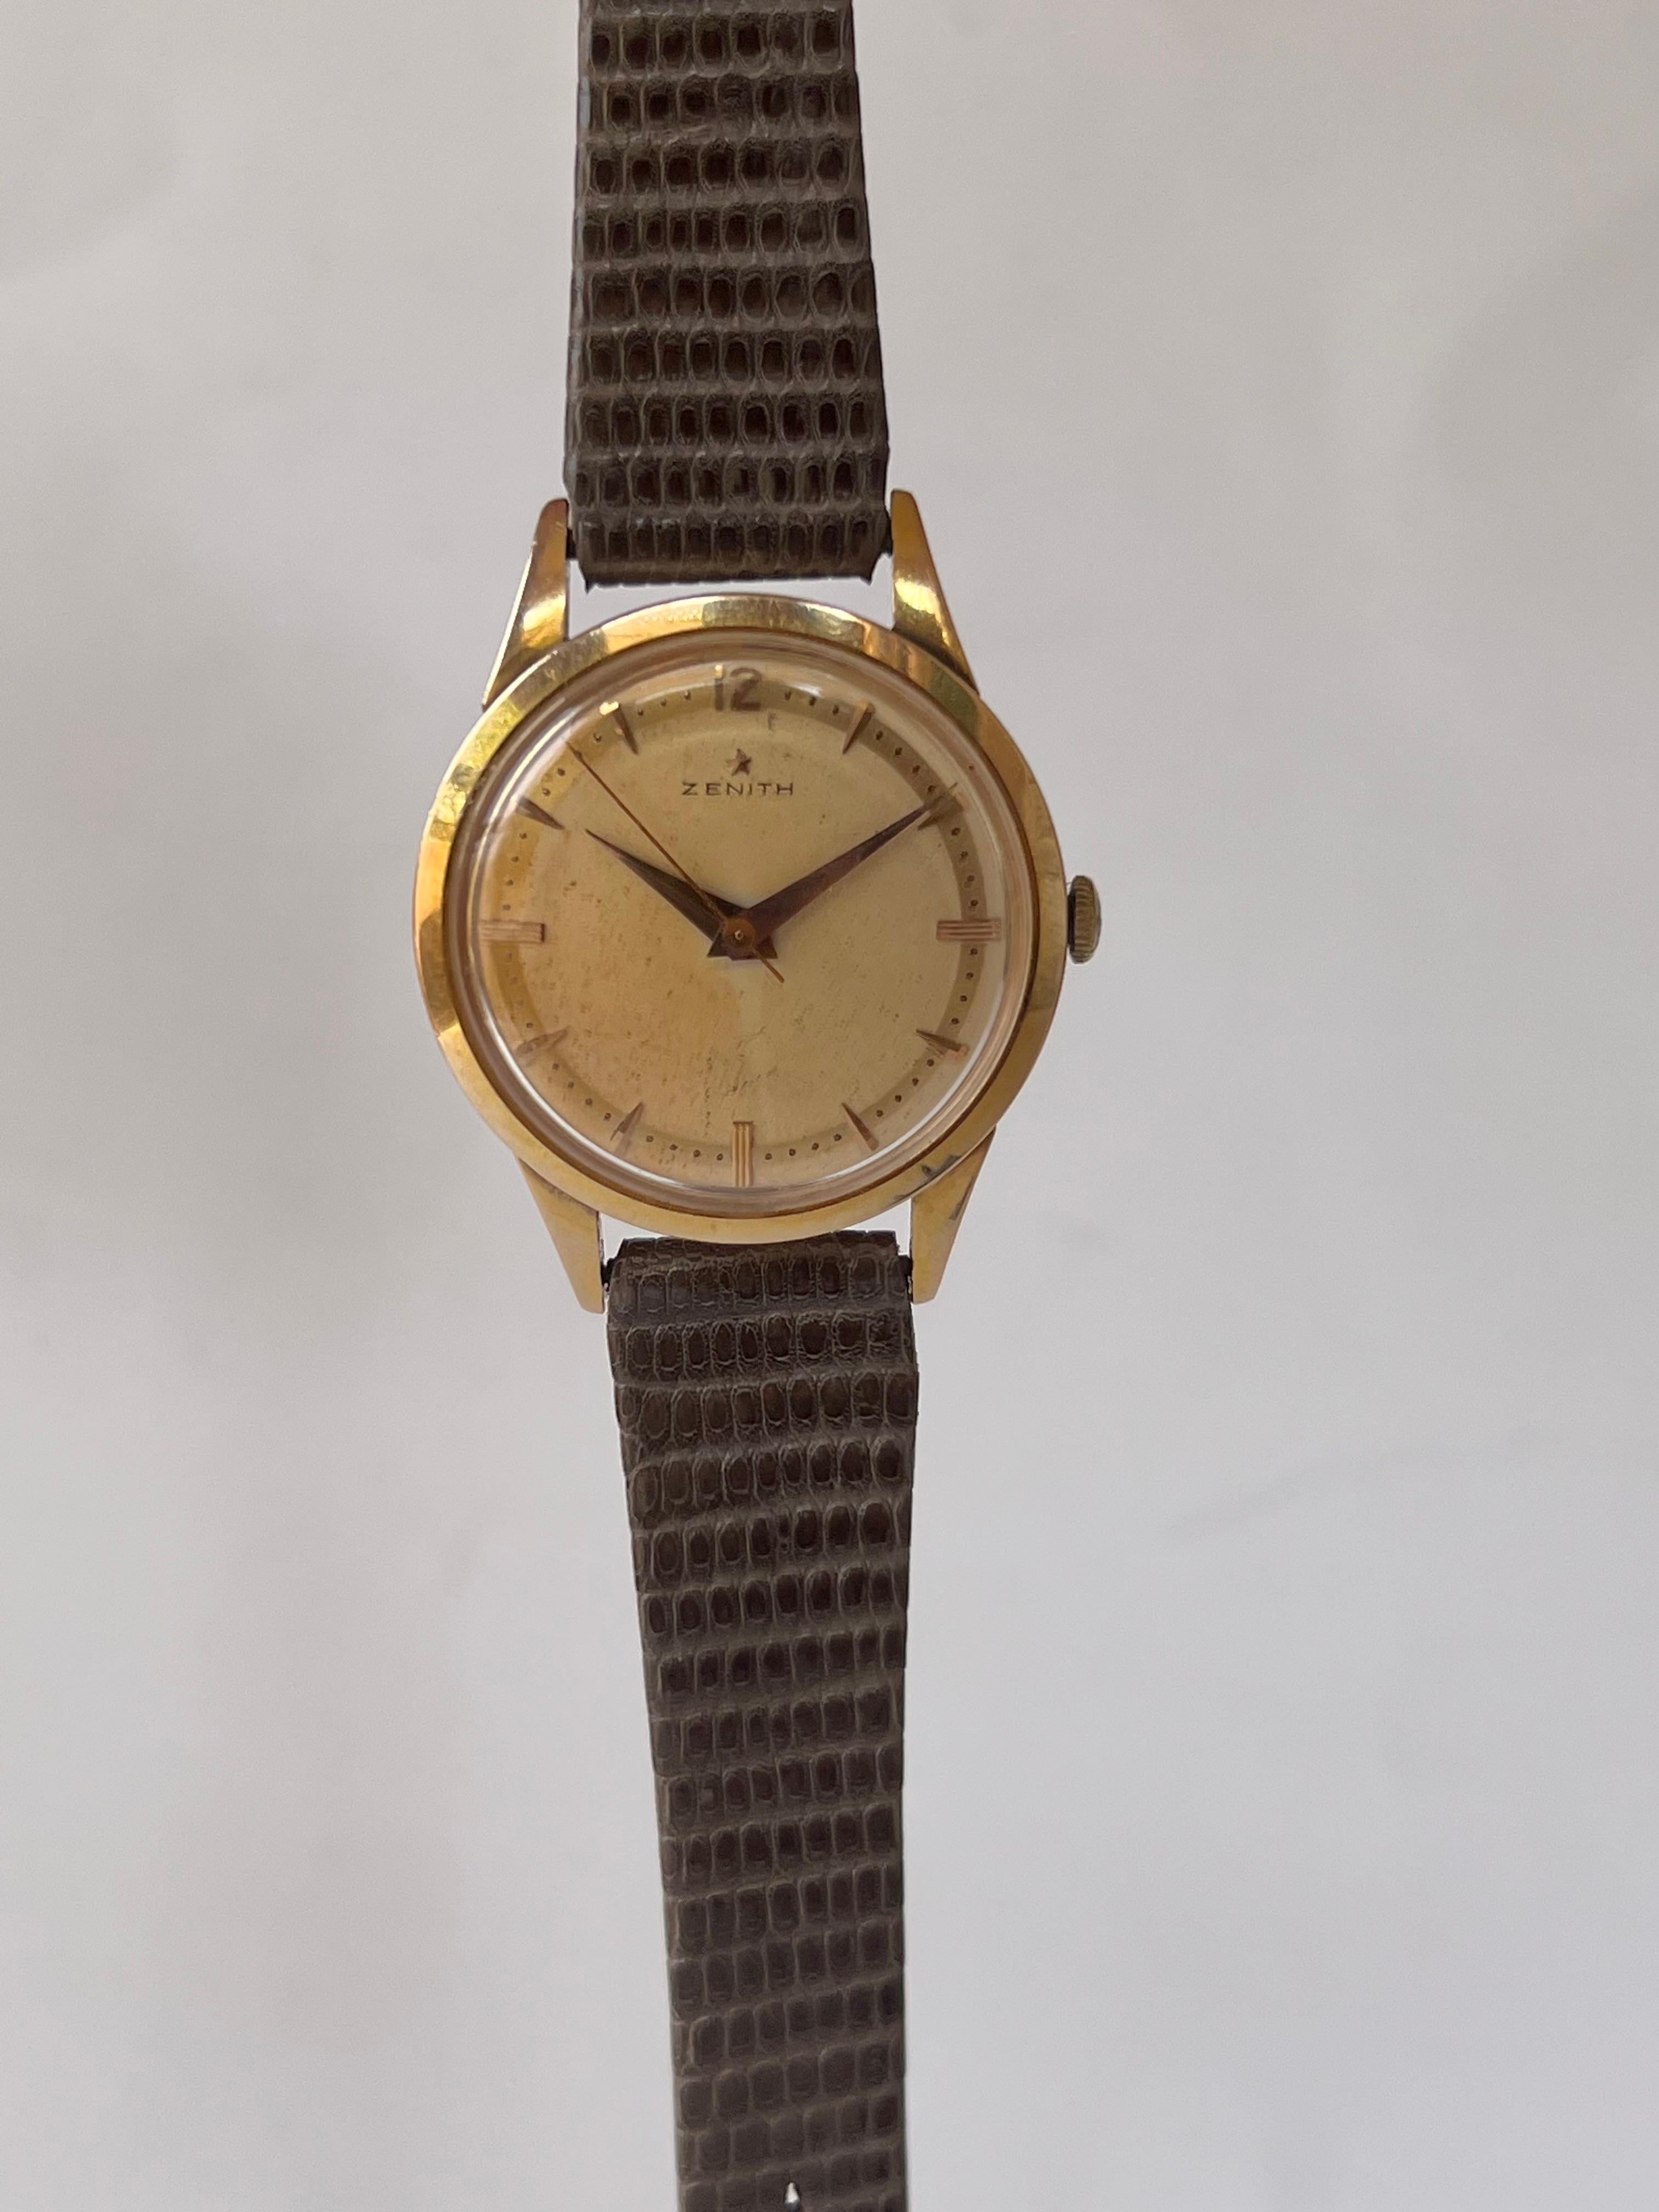 Vintage Rare Zenith Star Mechnical Bumper 80 microns Cal 120 cas Men's Watch 2